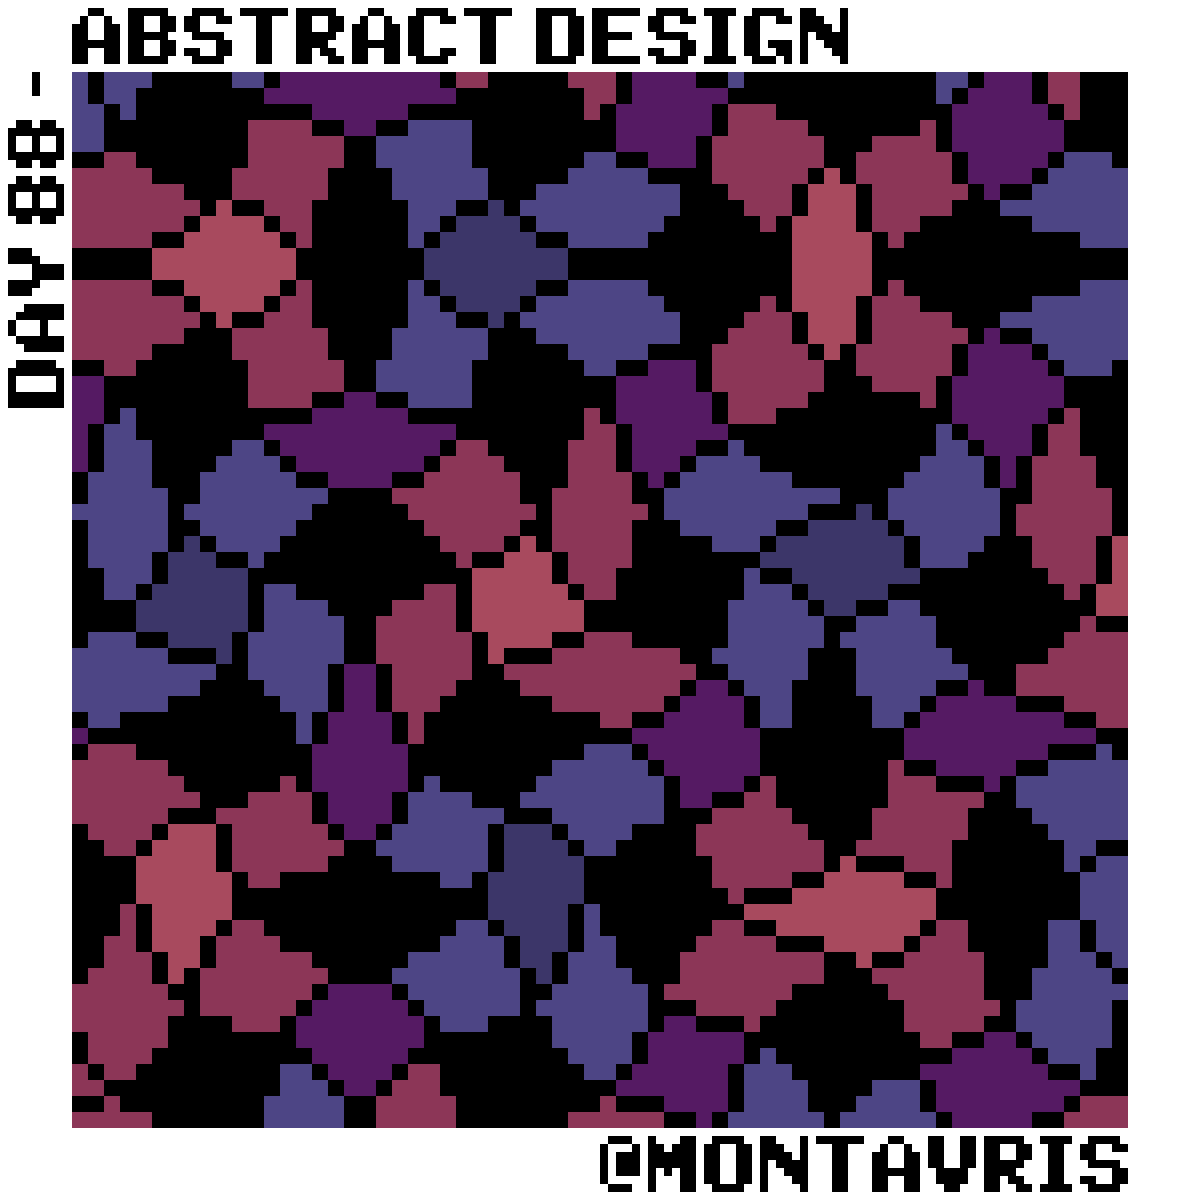 Day 88 of @Pixel_Dailies #pixel_dailies

An #AbstractDesign